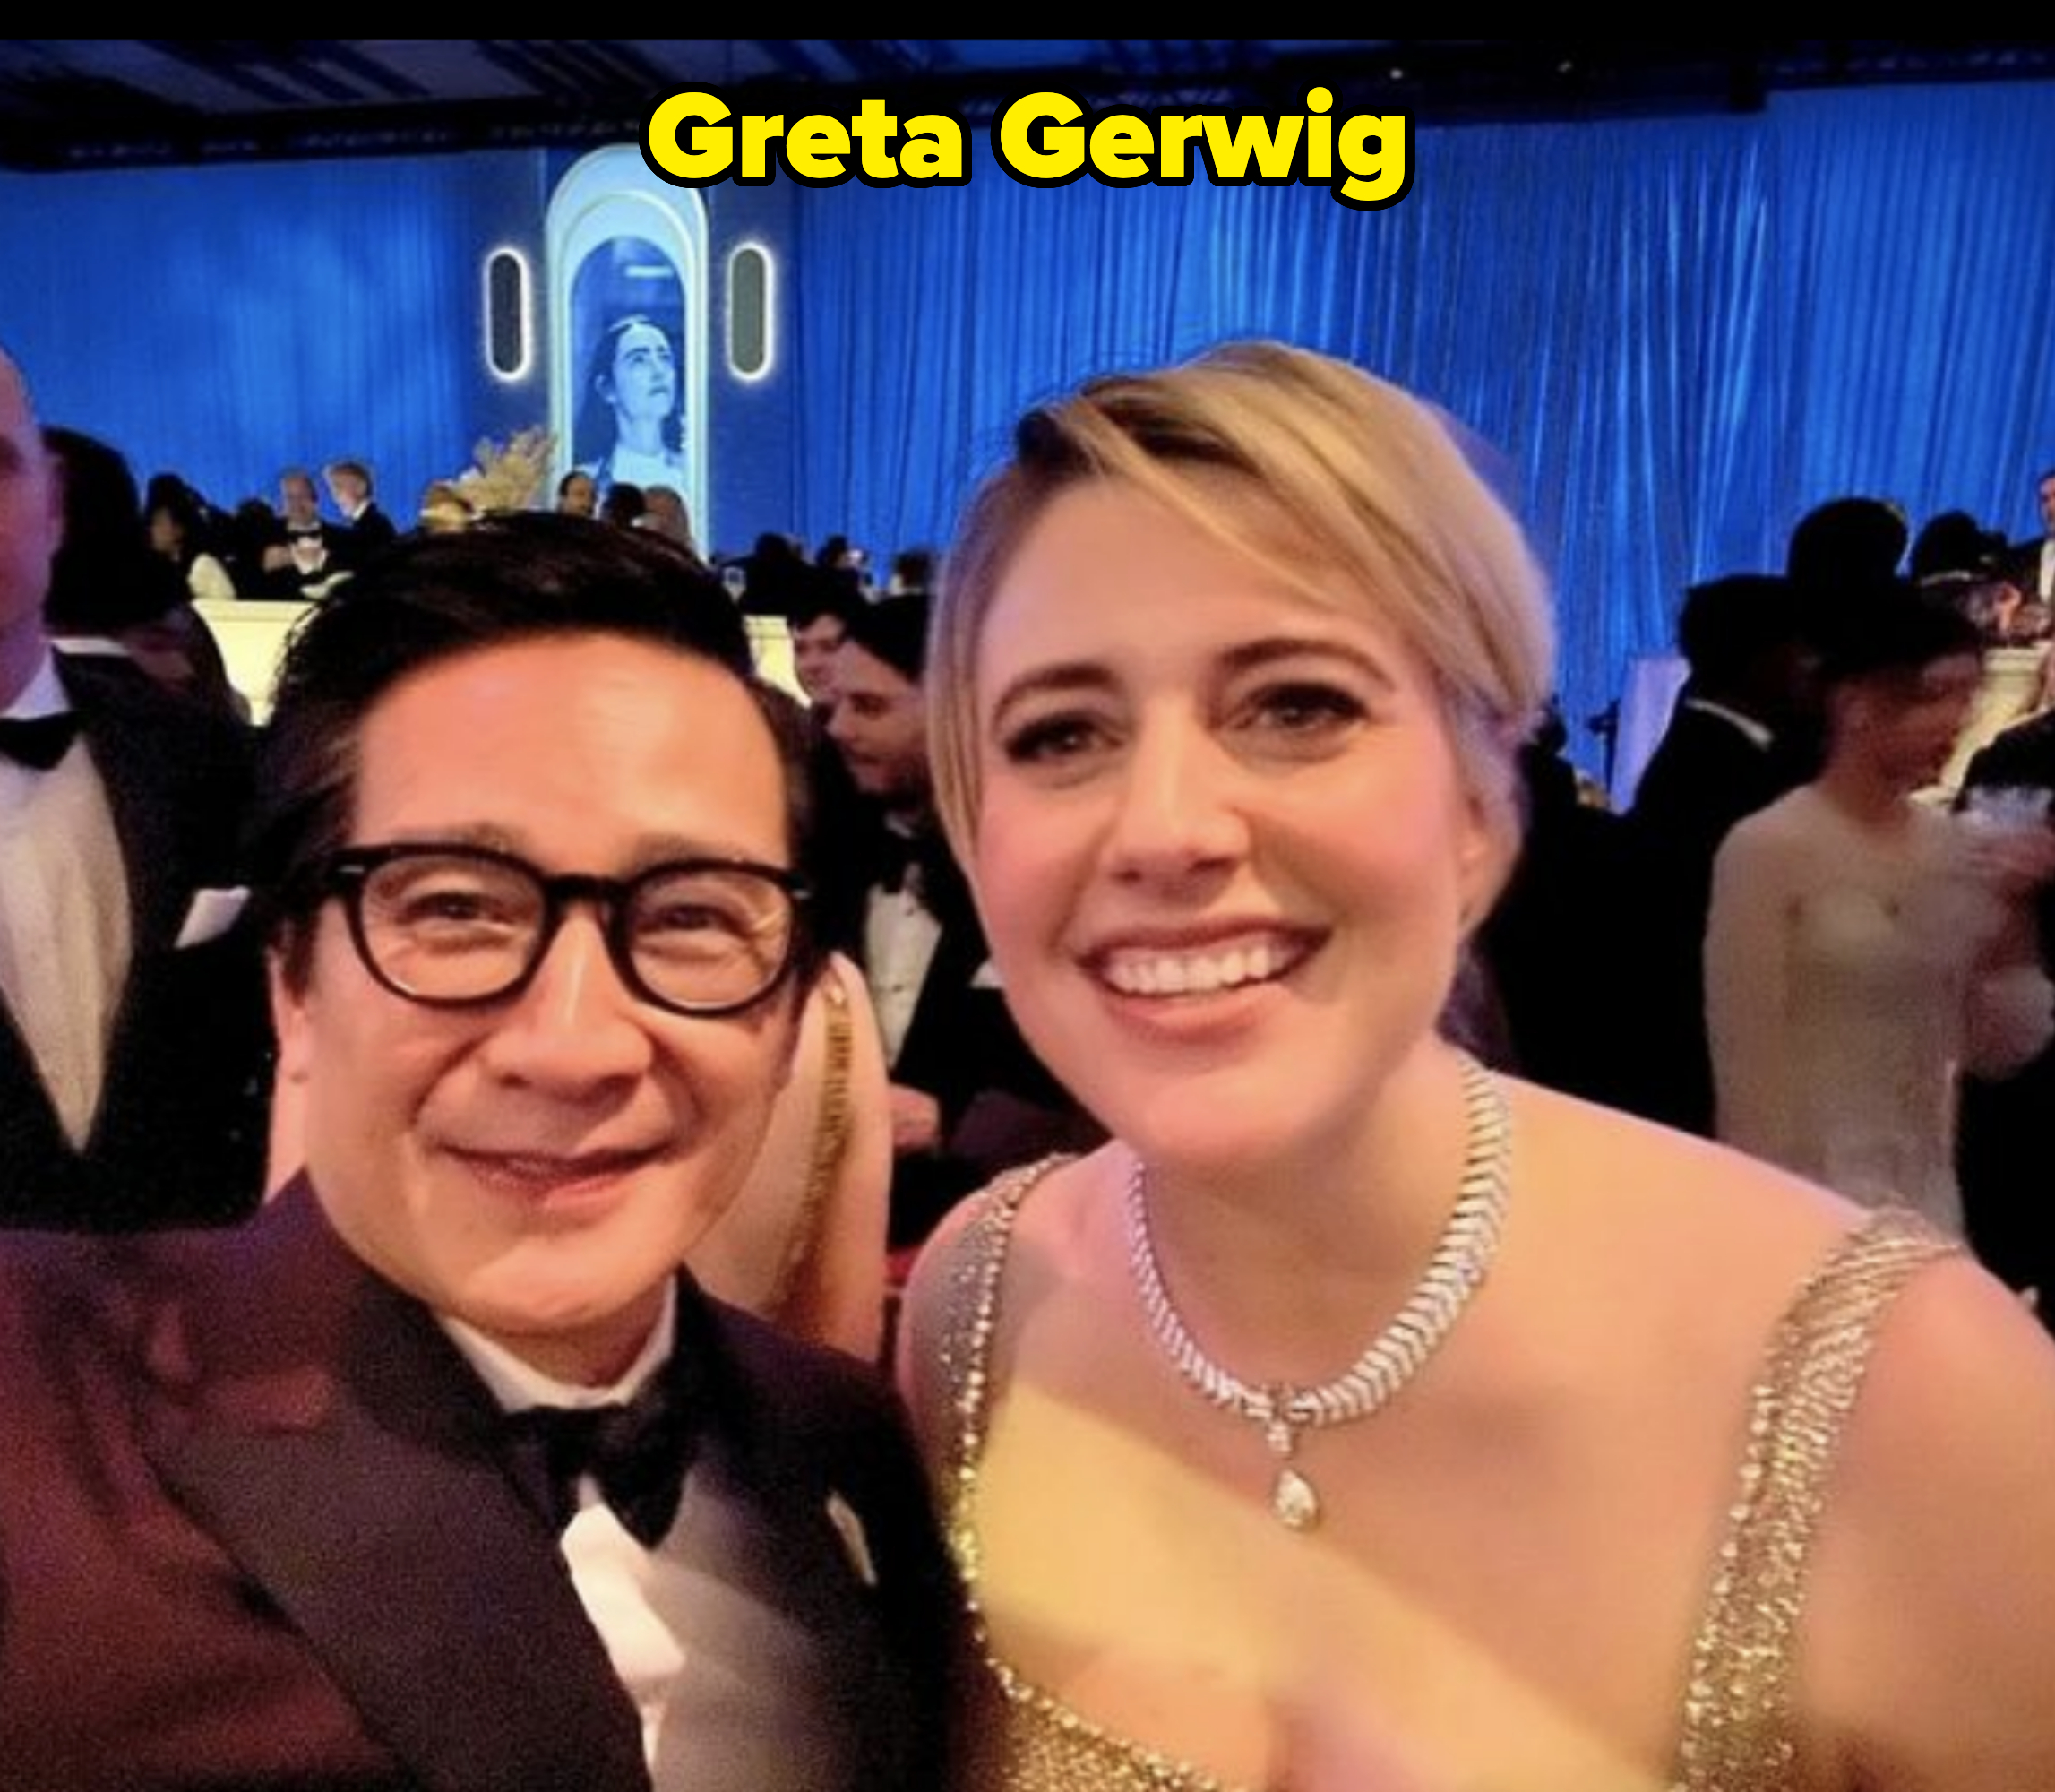 Ke Huy Quan and Greta Gerwig